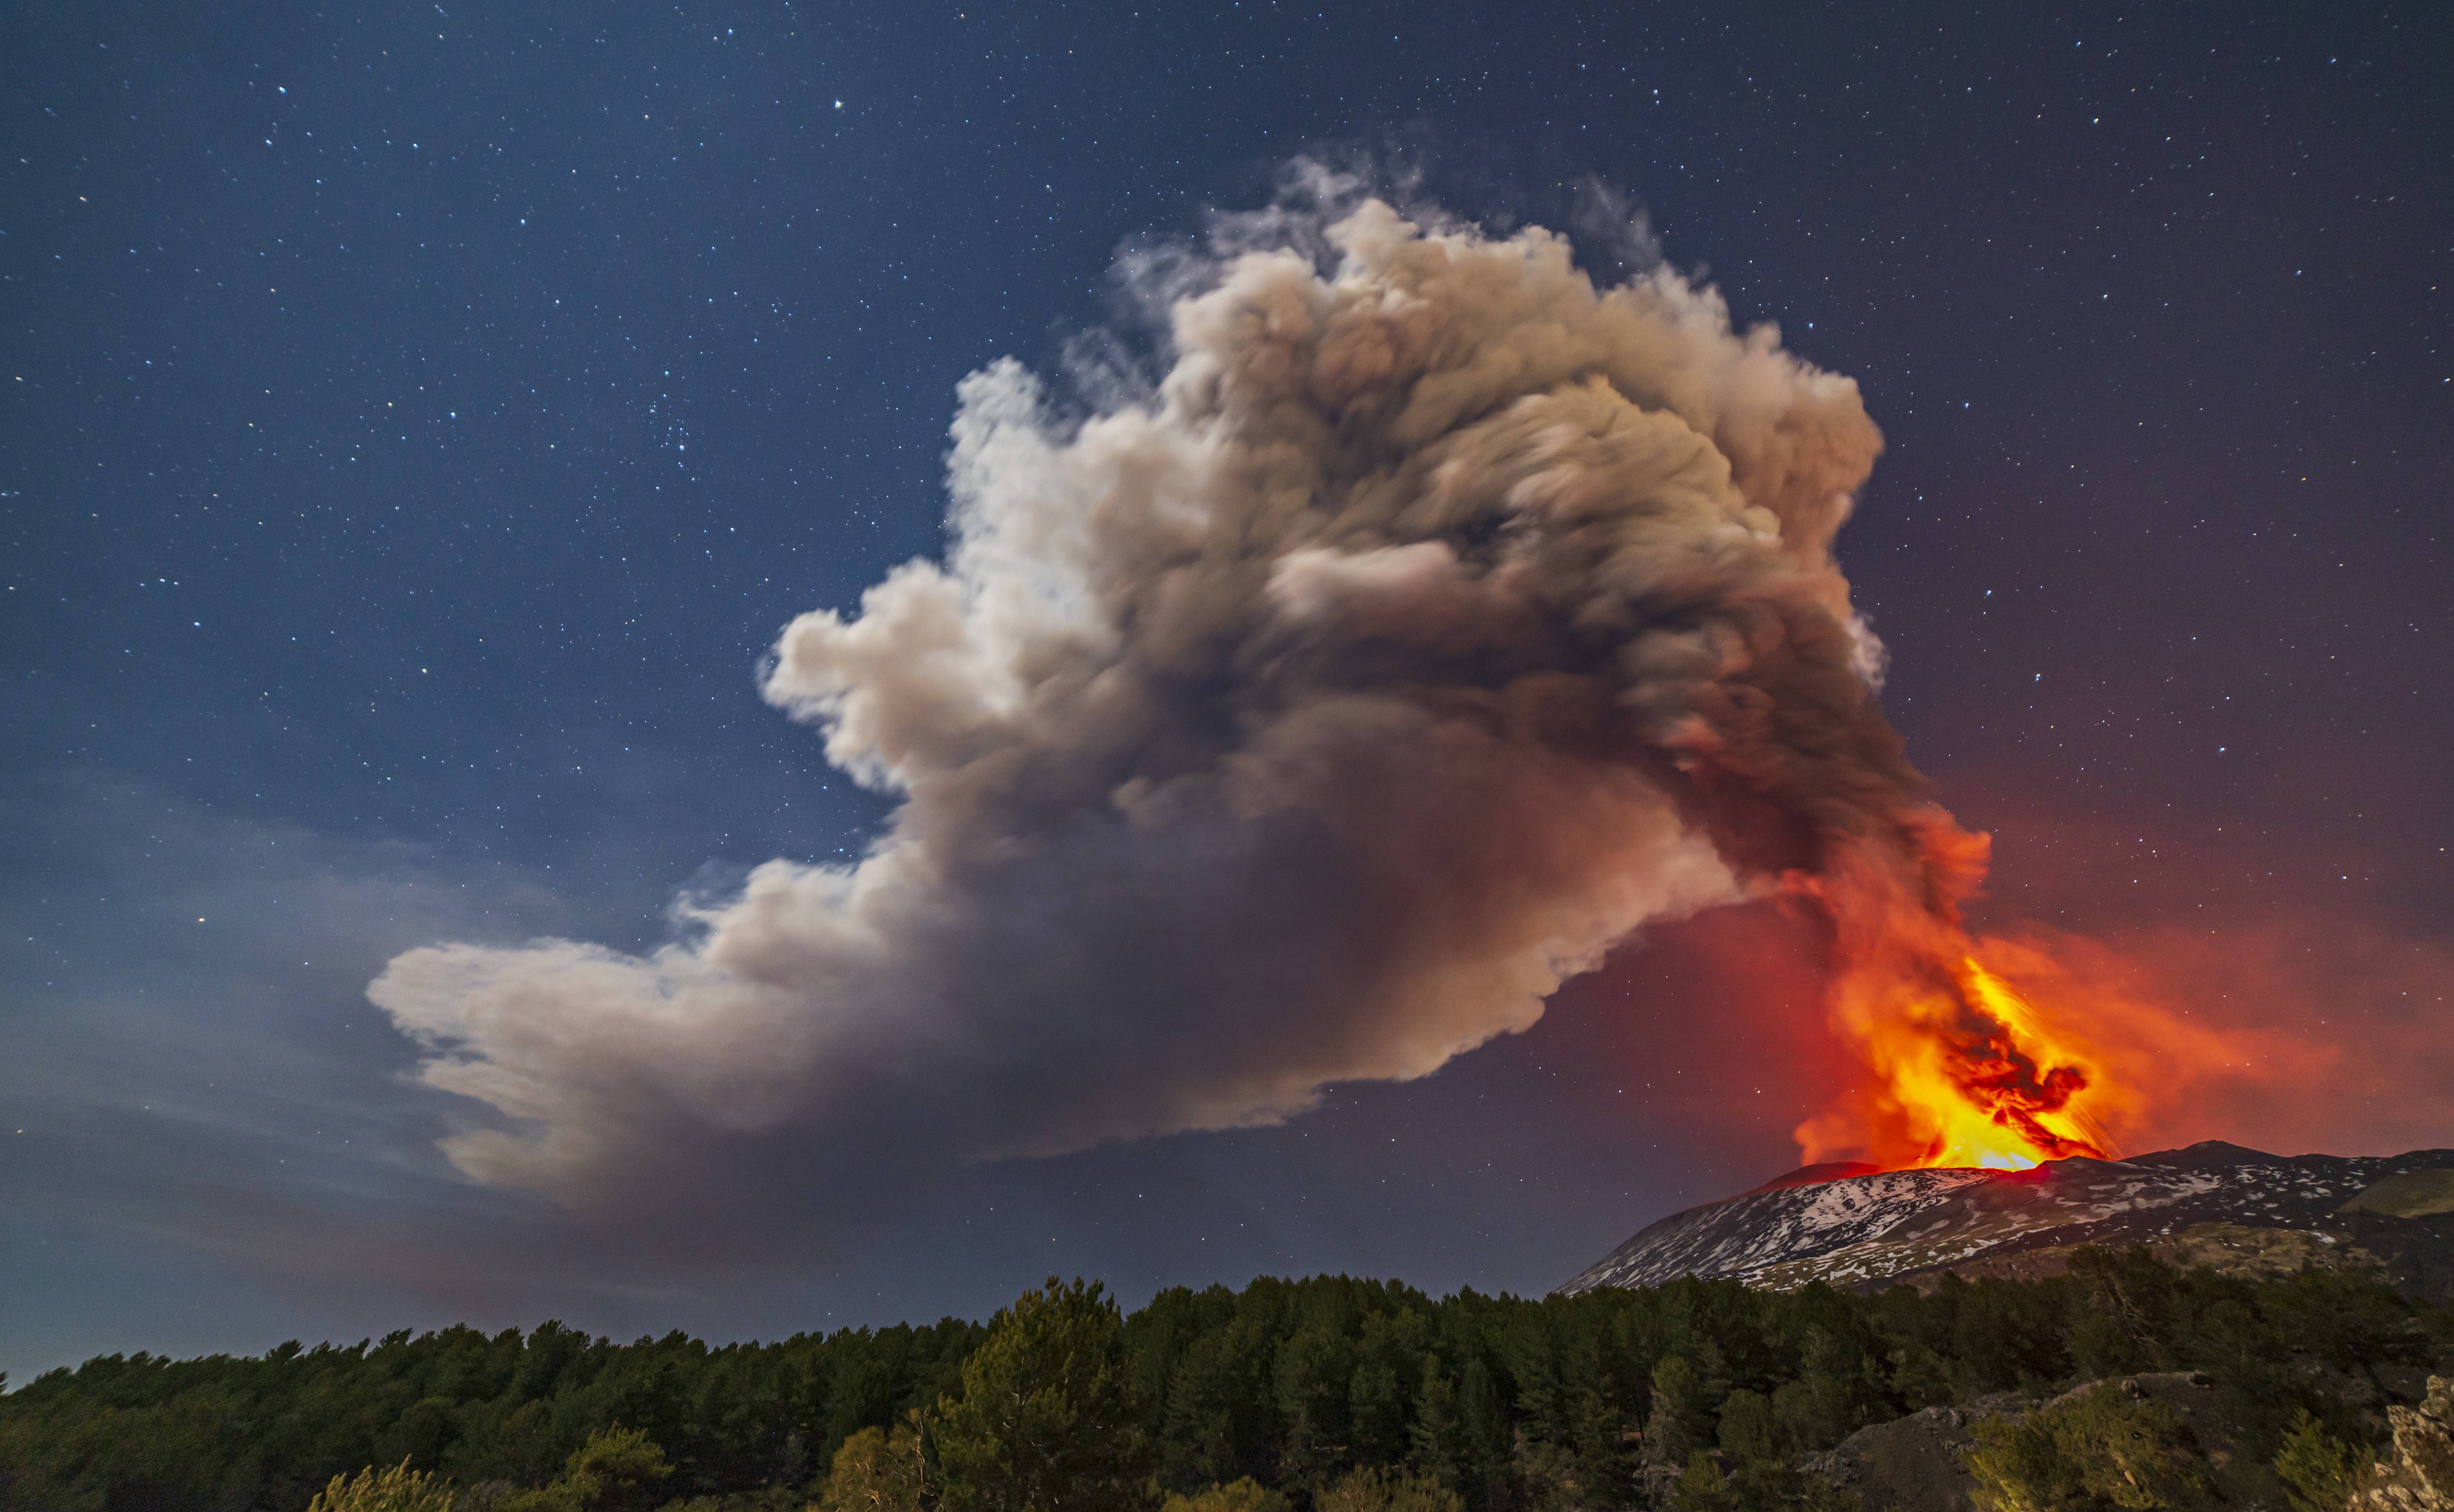 Fotos. Así se ve la erupción del volcán Etna en Italia